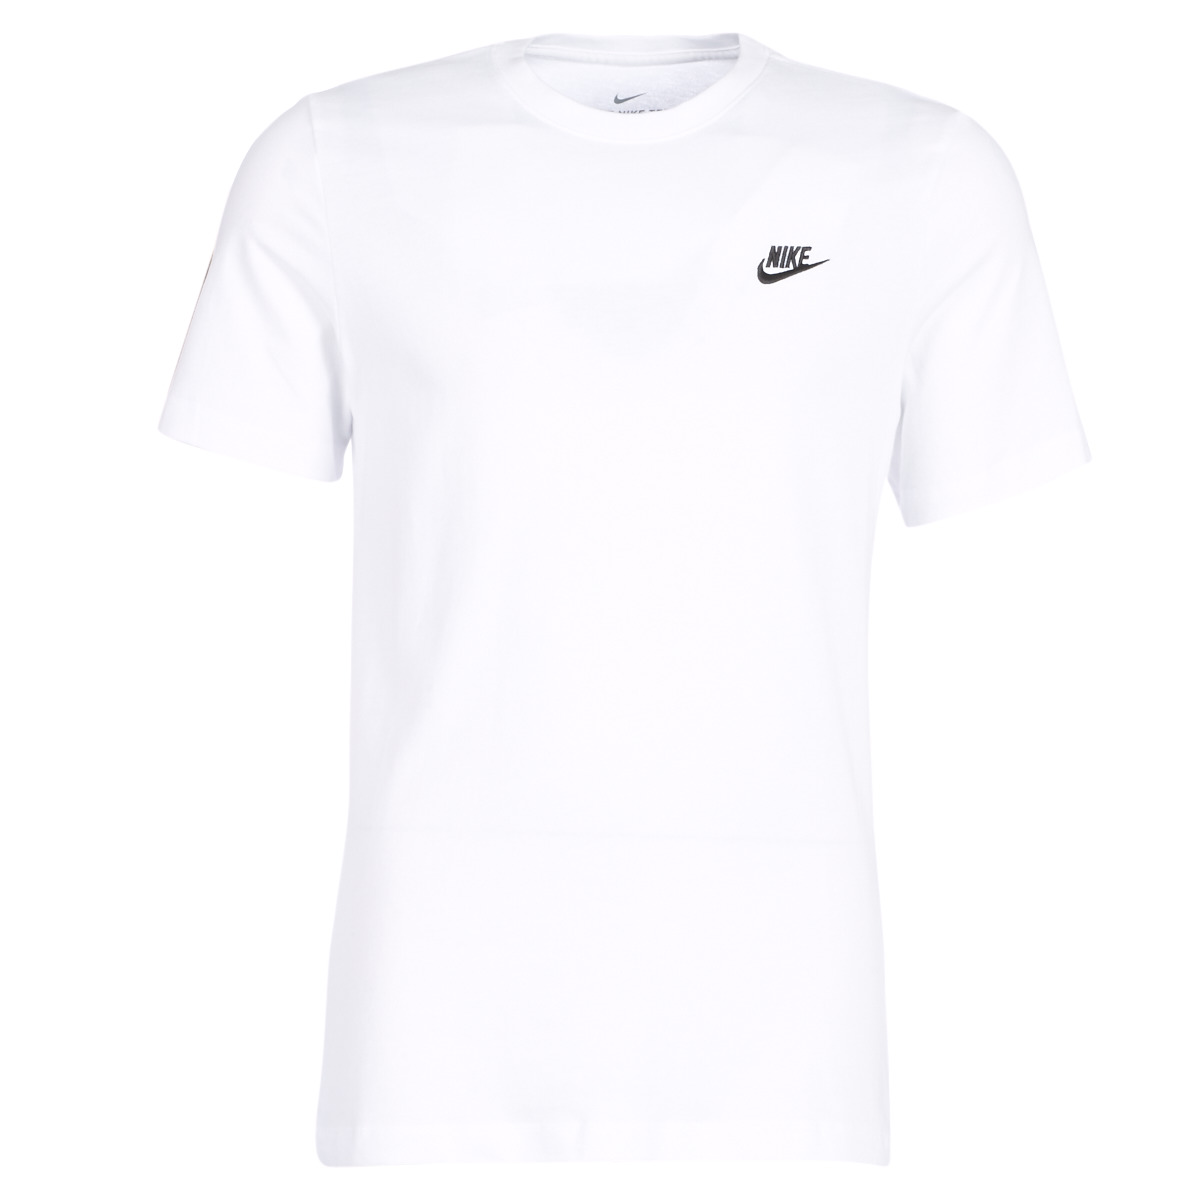 Ruhák Férfi Rövid ujjú pólók Nike NIKE SPORTSWEARS CLUB Fehér